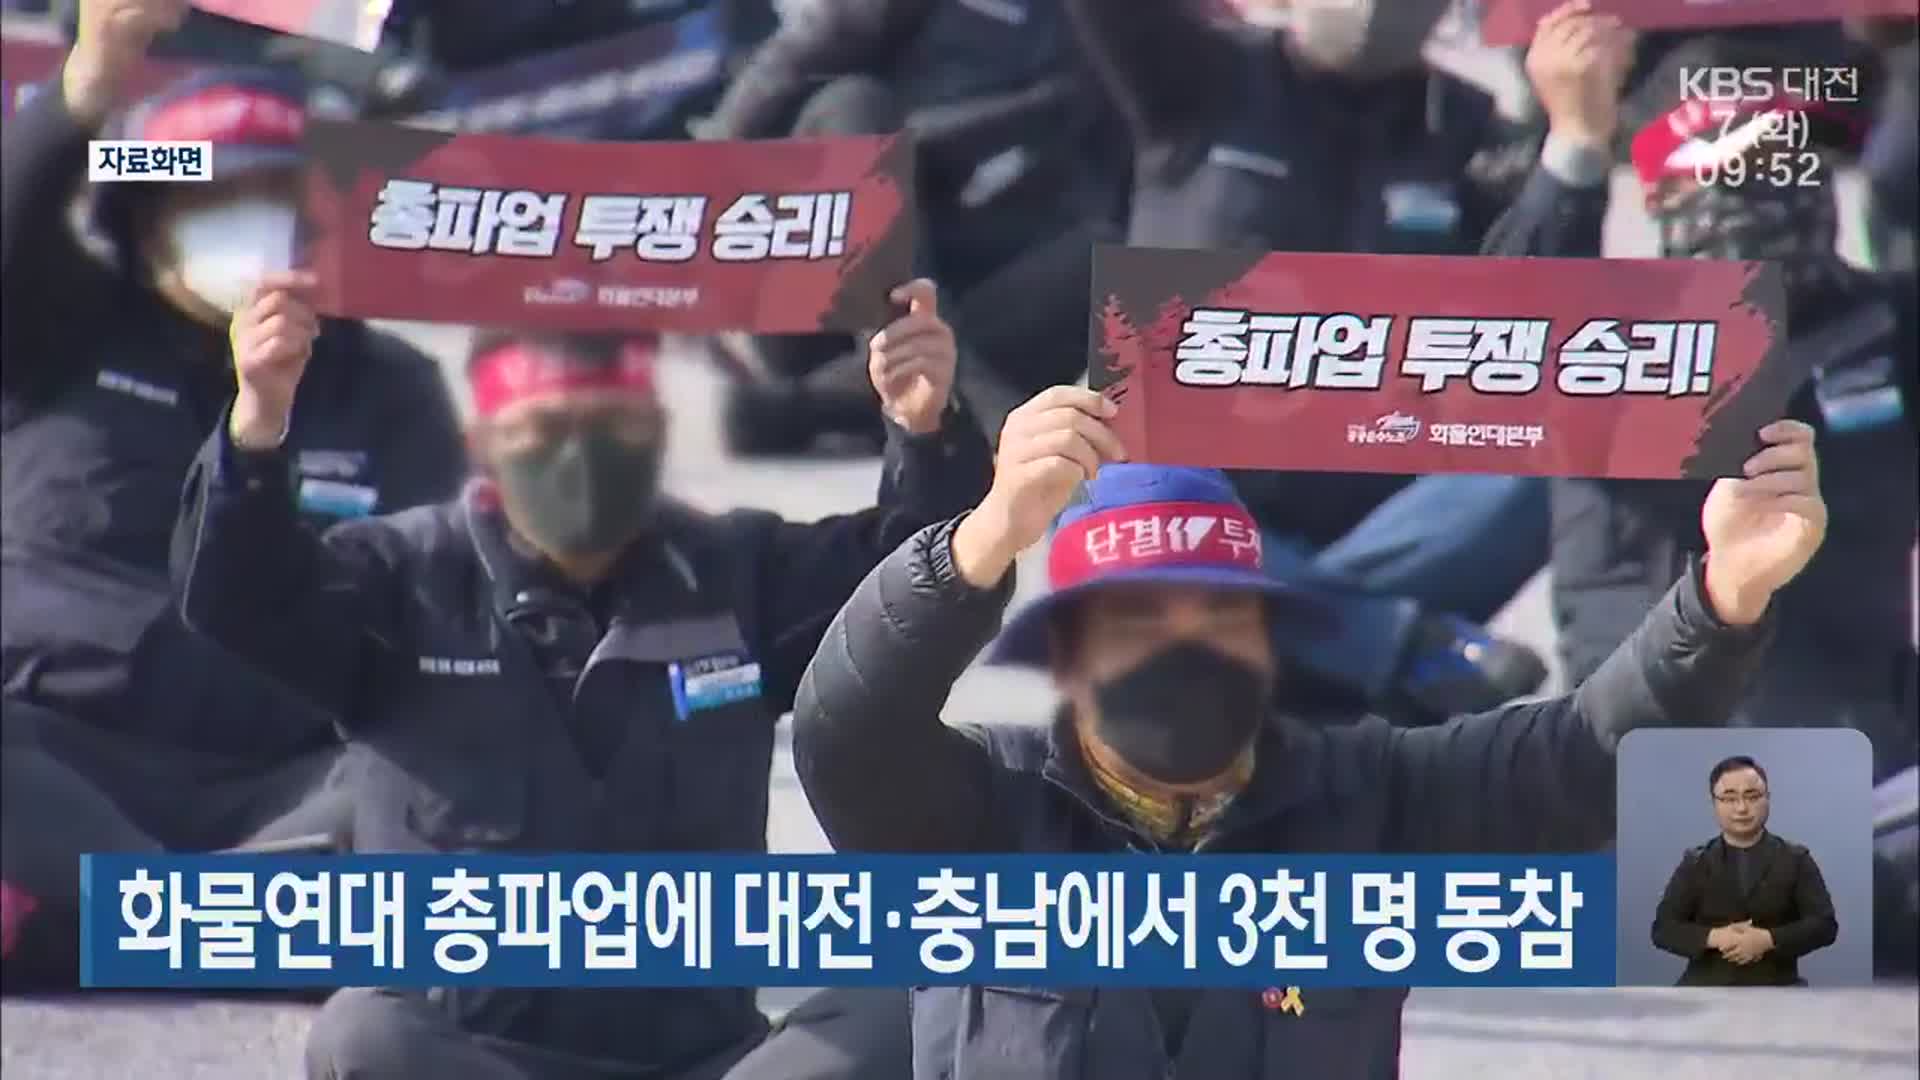 화물연대 총파업에 대전·충남에서 3천 명 동참